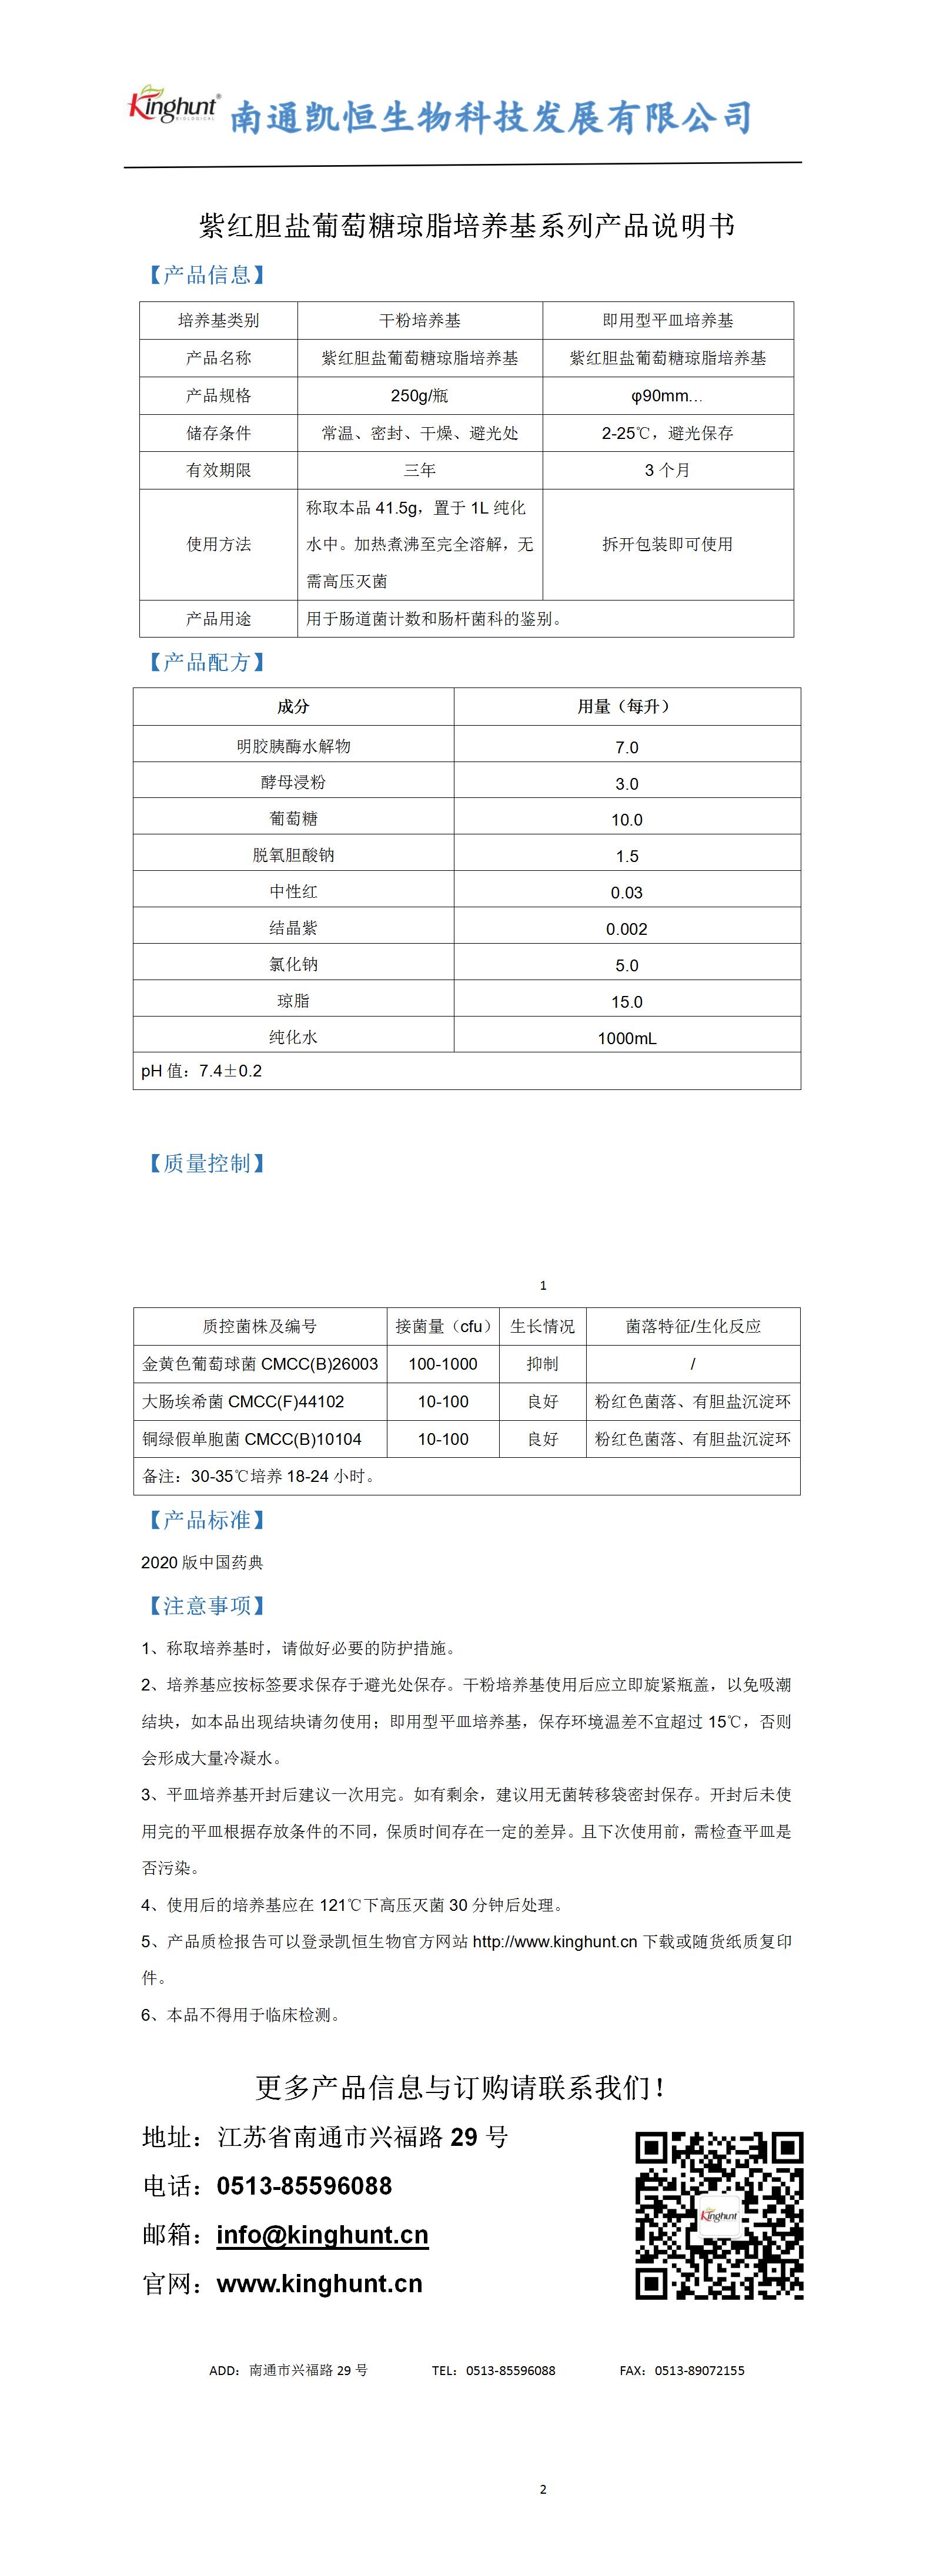 紫红胆盐葡萄糖琼脂培养基系列产品说明书_01.jpg